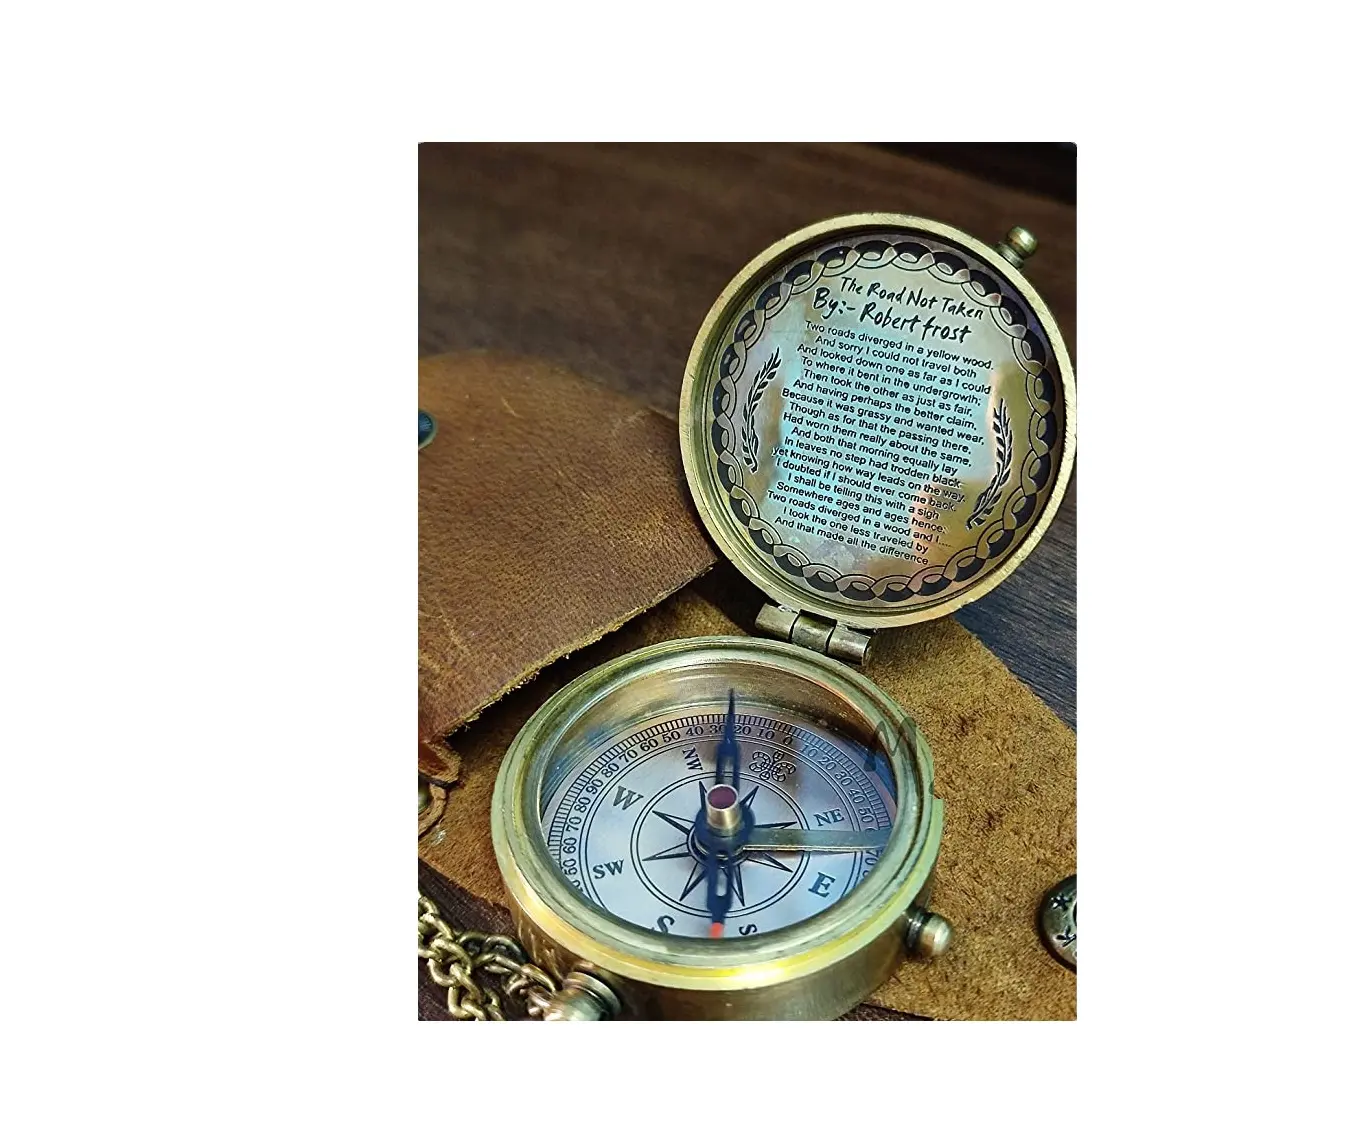 Áutica sundial compasso withote caixa de madeira, colecionável, mostrador solar marinho, bússola, antigo, item náutico